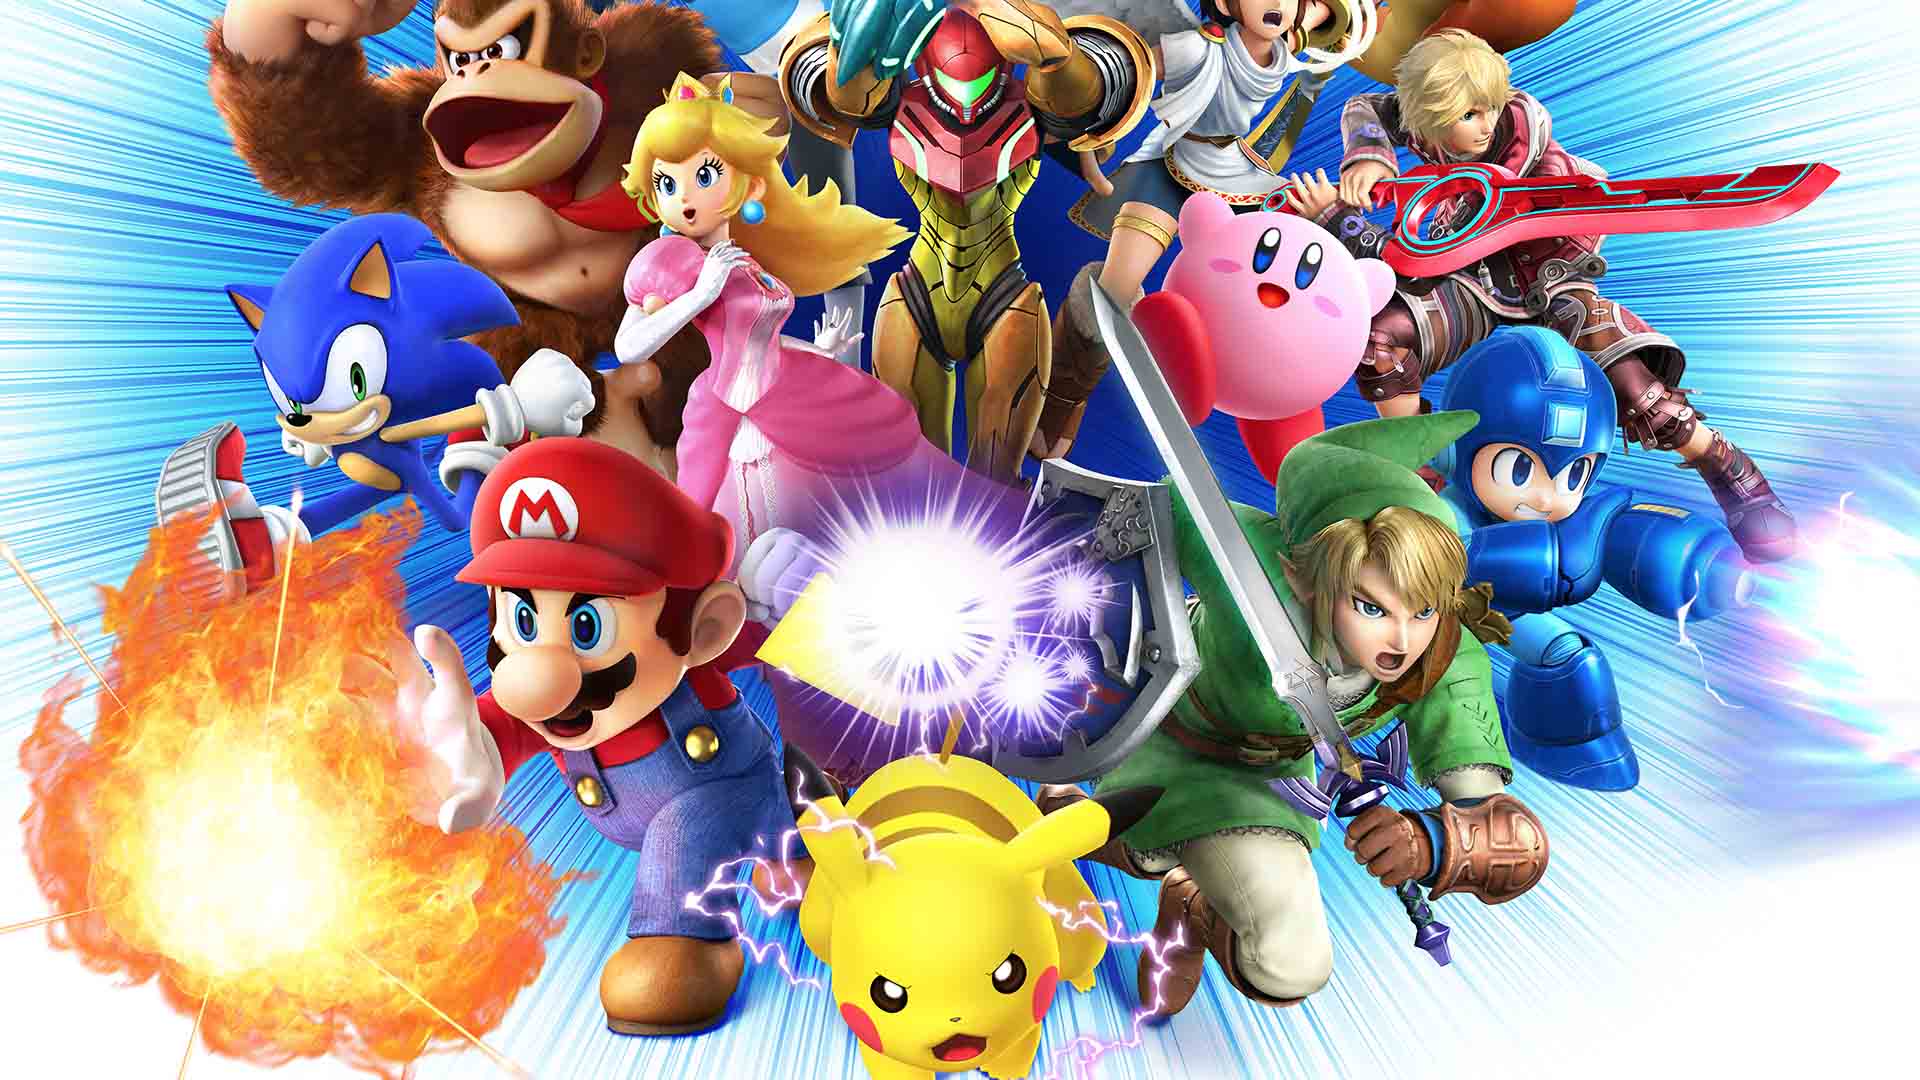 Mario smash bros. Супер смэш БРОС персонажи. Nintendo Smash Bros.. Super Smash Bros for Wii u. Super Smash Bros. Ultimate (2018).